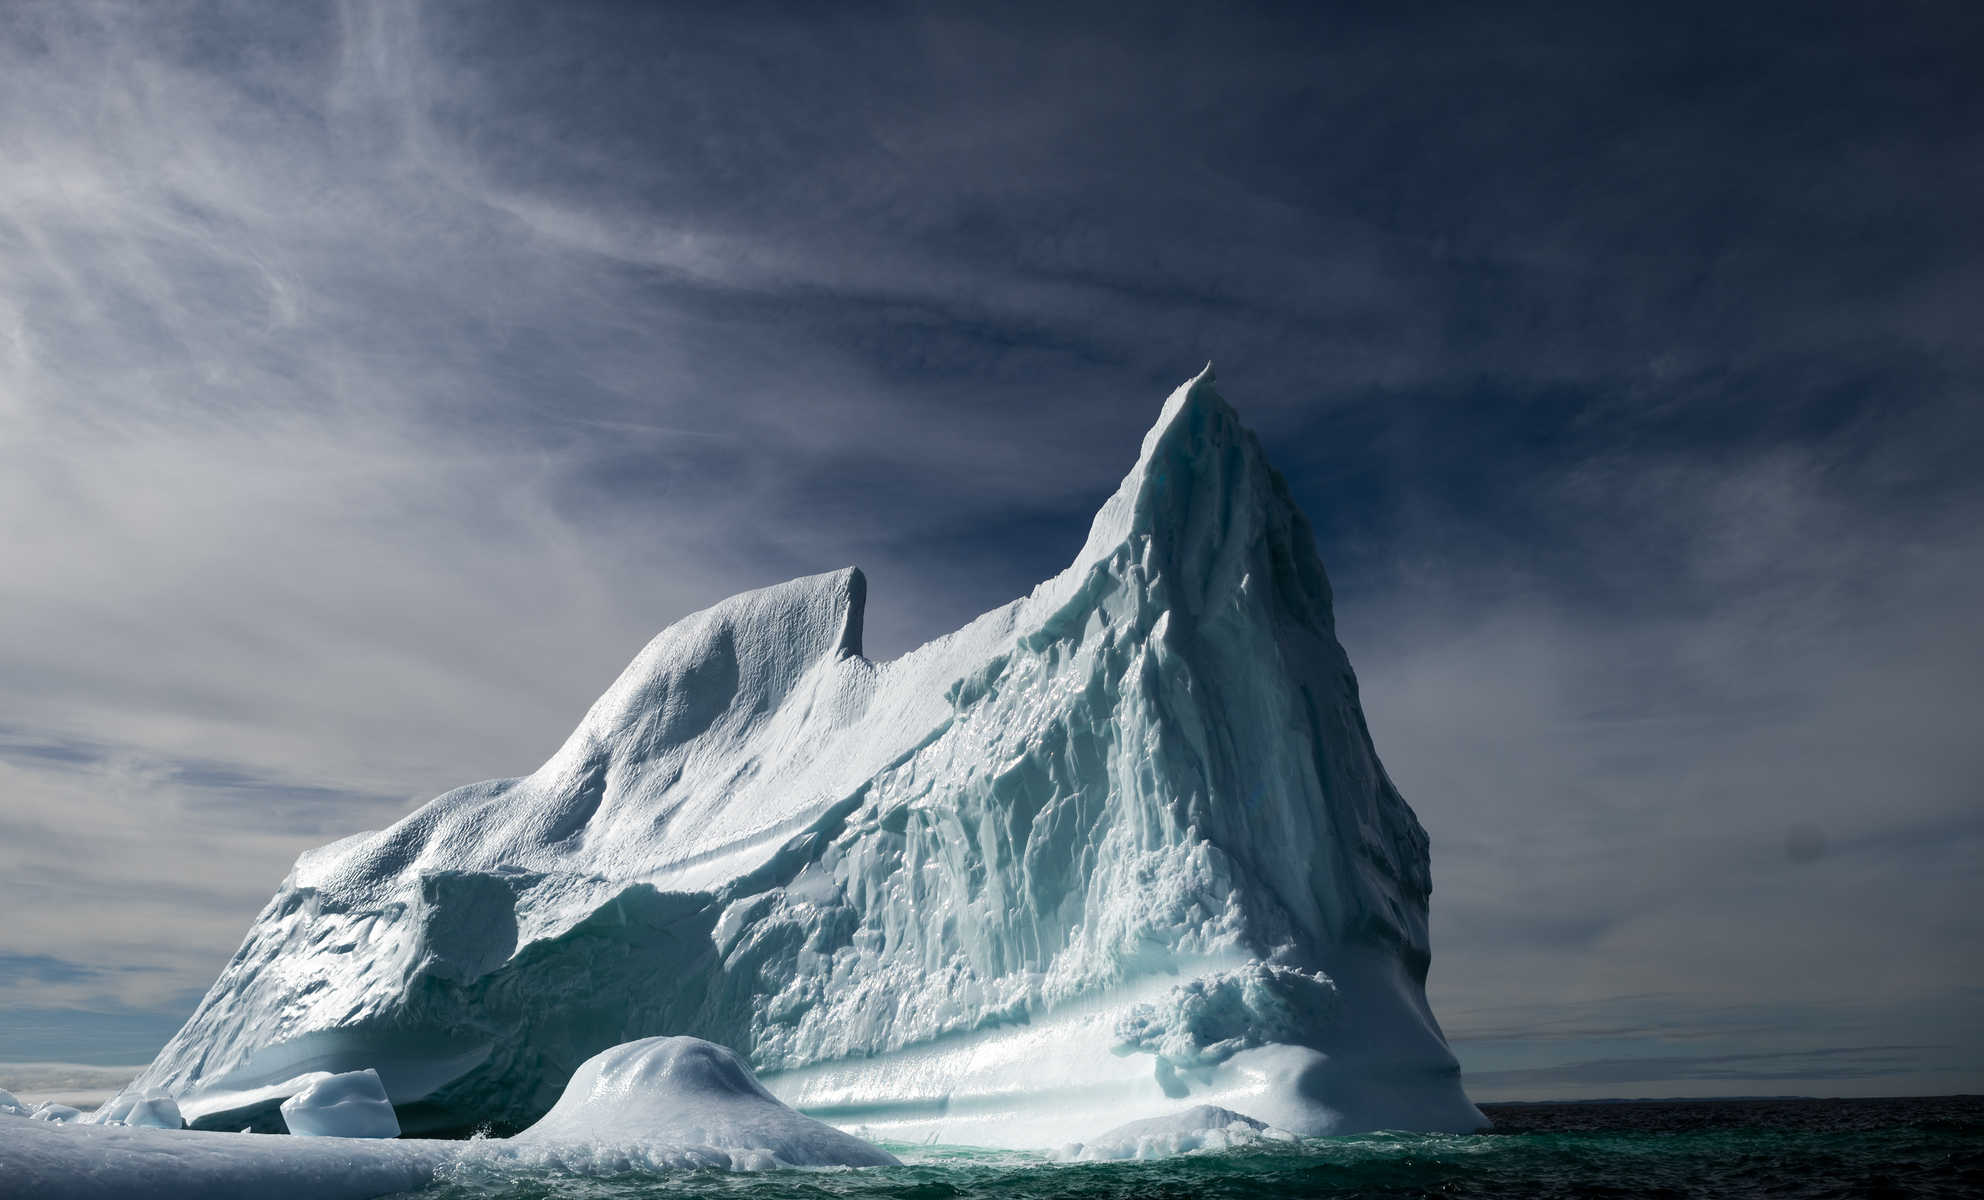 أكبر جبل جليدي في العالم يدخل "الممر الخطير".. ما الموضوع؟